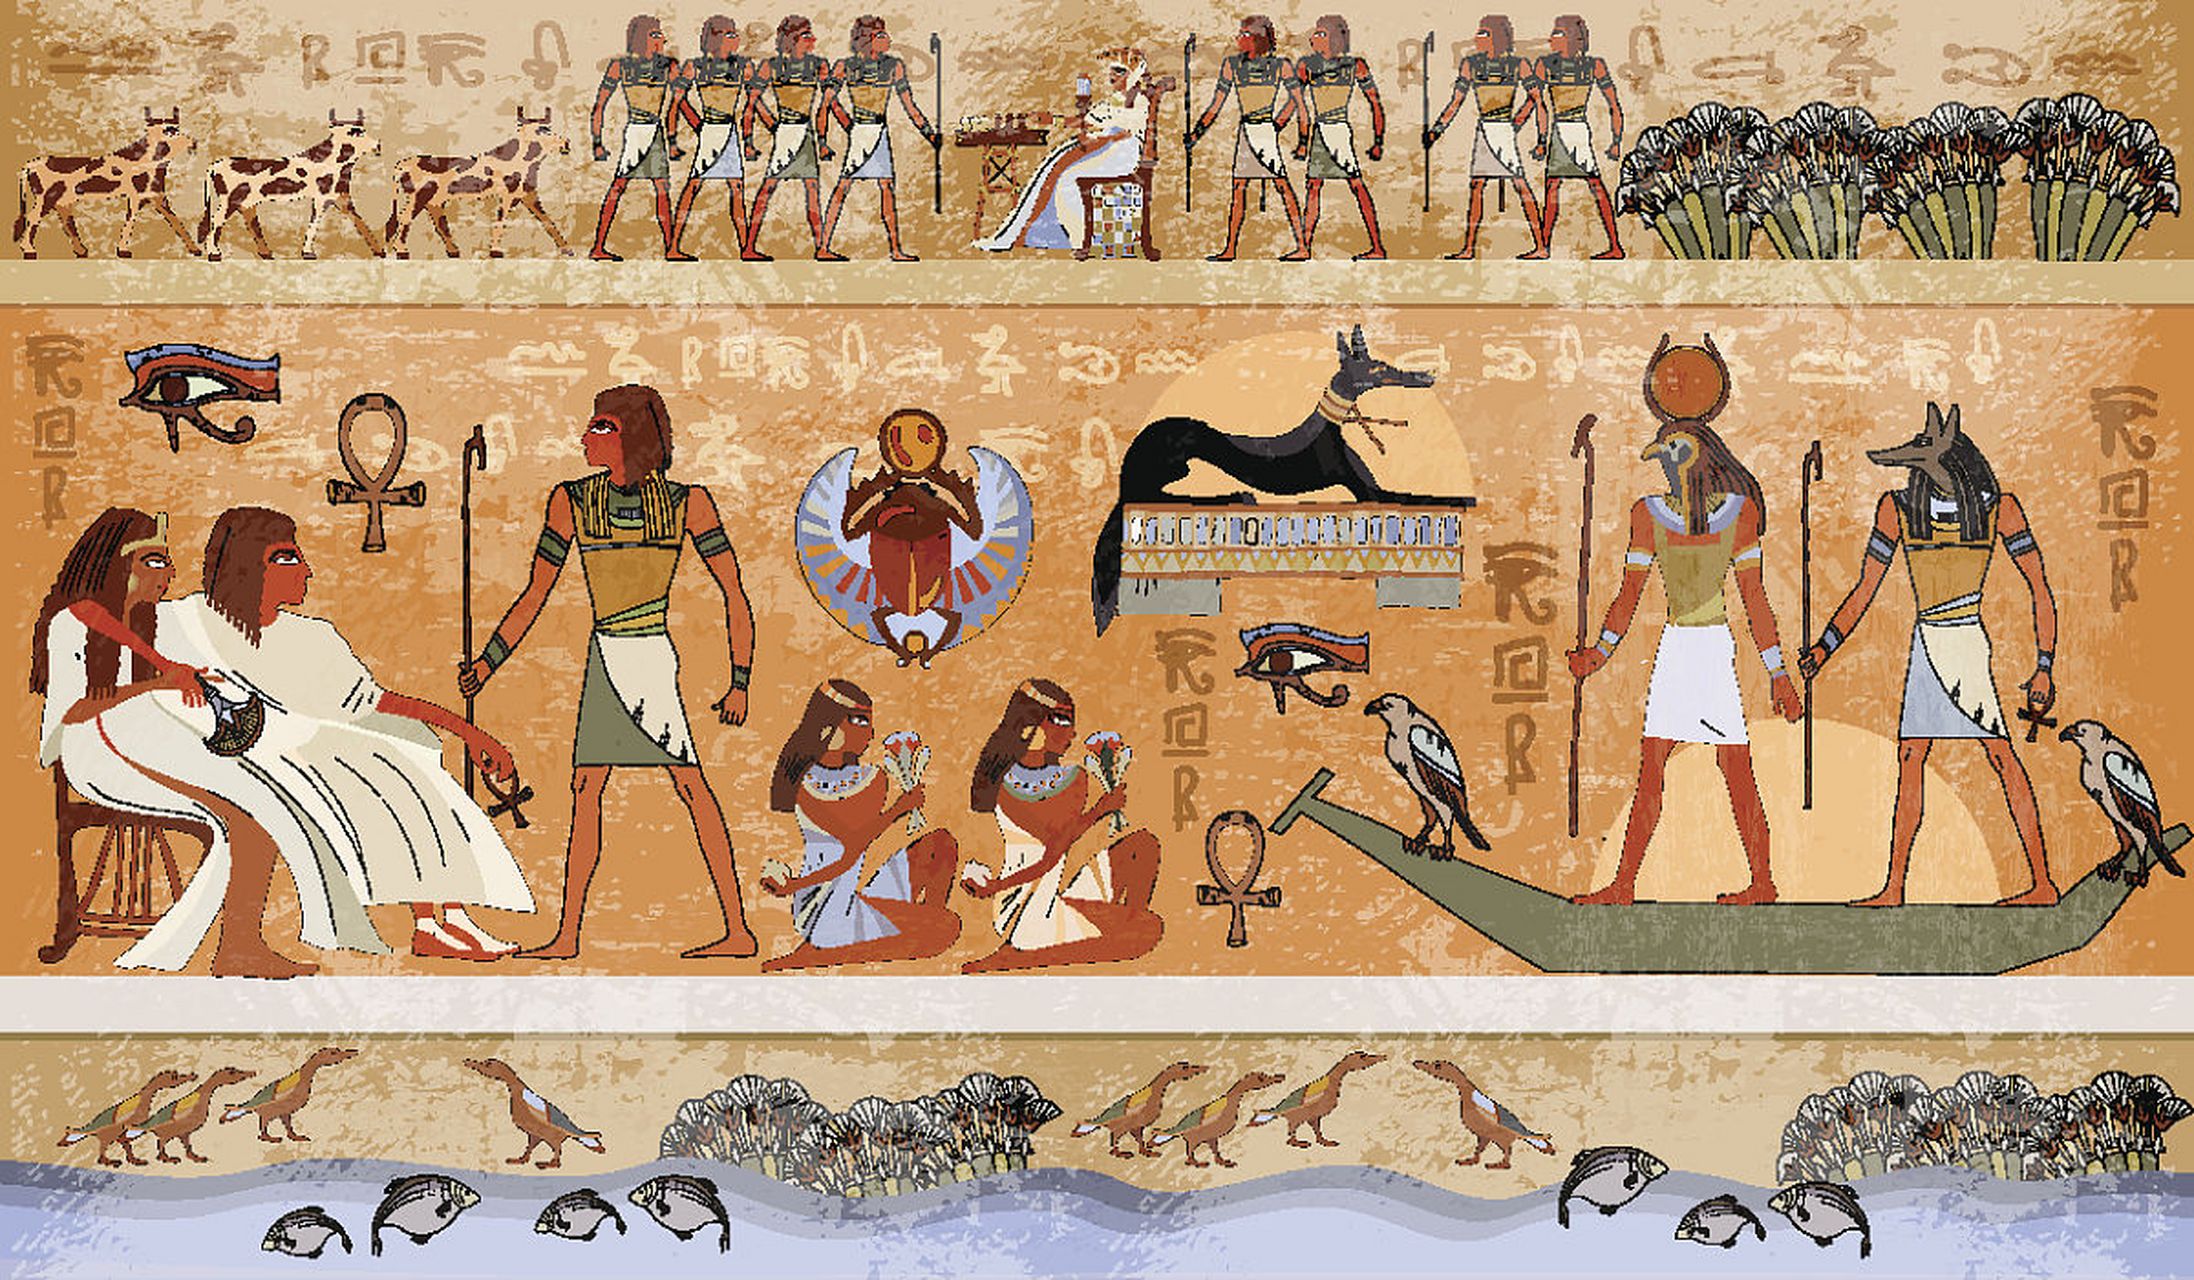 许多人马上就会联想到金字塔和木乃伊,但其实它们只是古埃及遗产的一